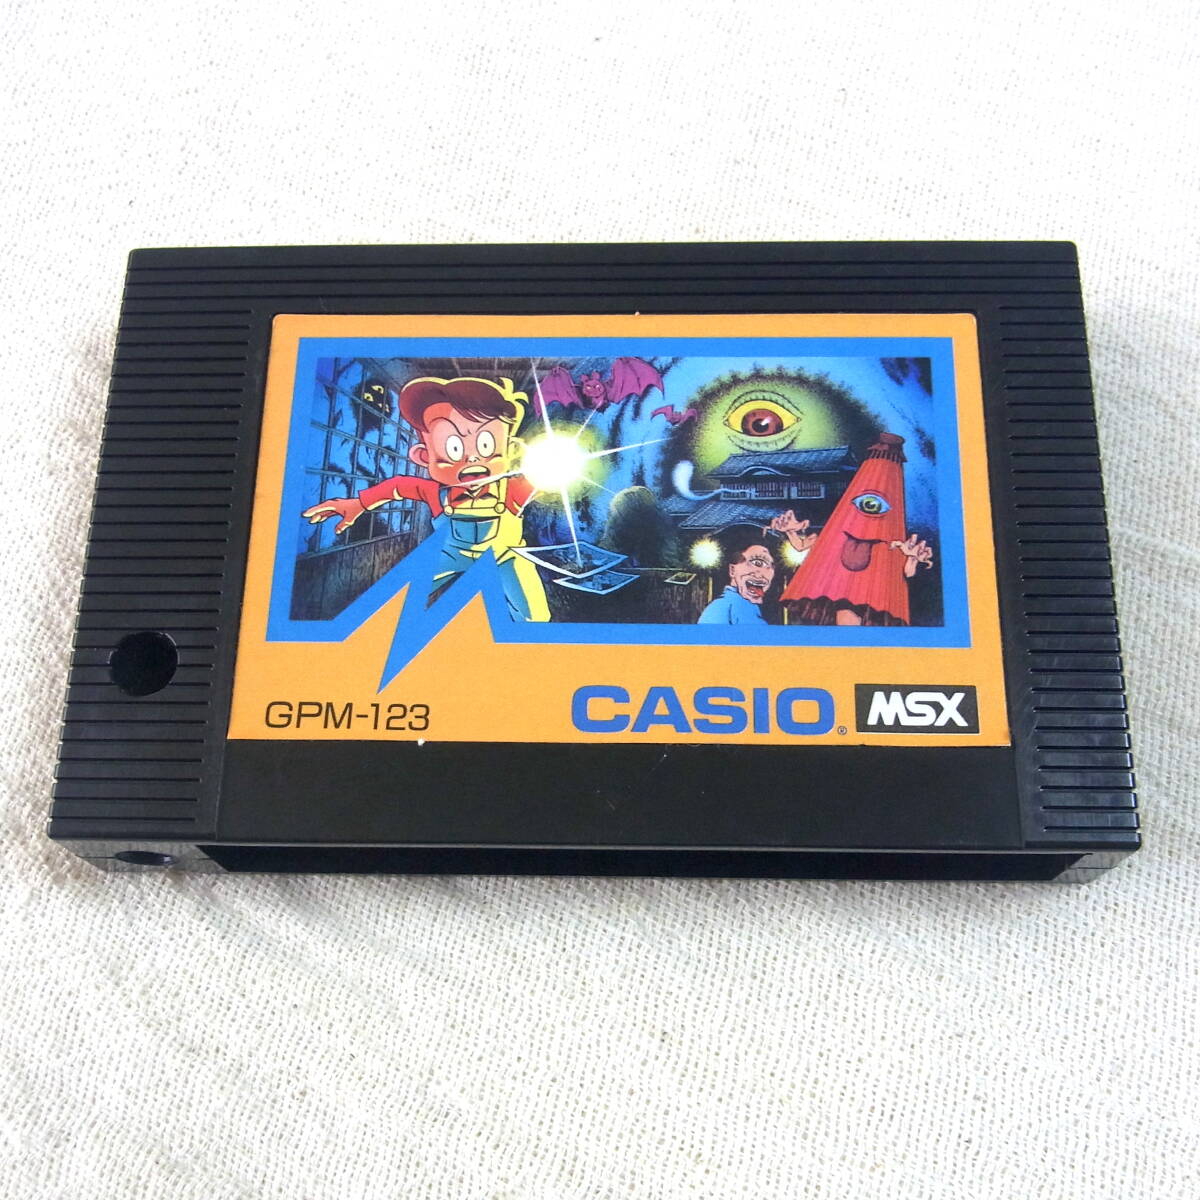 MSX[.. shop .]GPM-123|CASIO| Showa Retro game |ROM cartridge | Casio | soft |...|kouji.| Famicom 